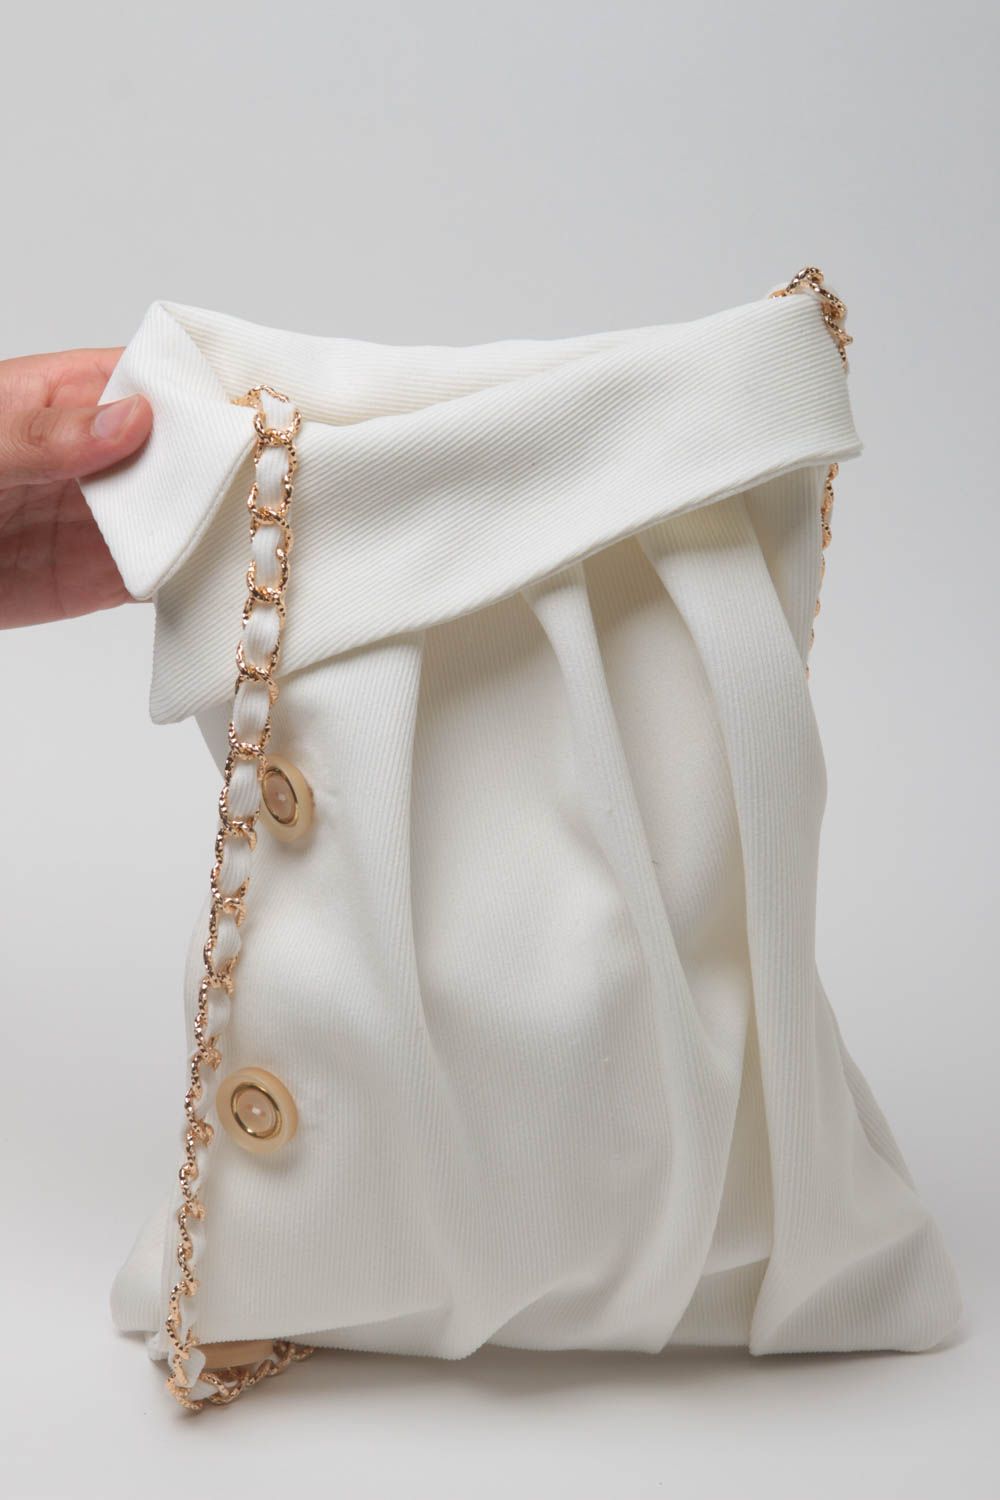 Sac bandoulière fait main Sac à main tissu blanc avec chaîne Accessoire femme photo 5